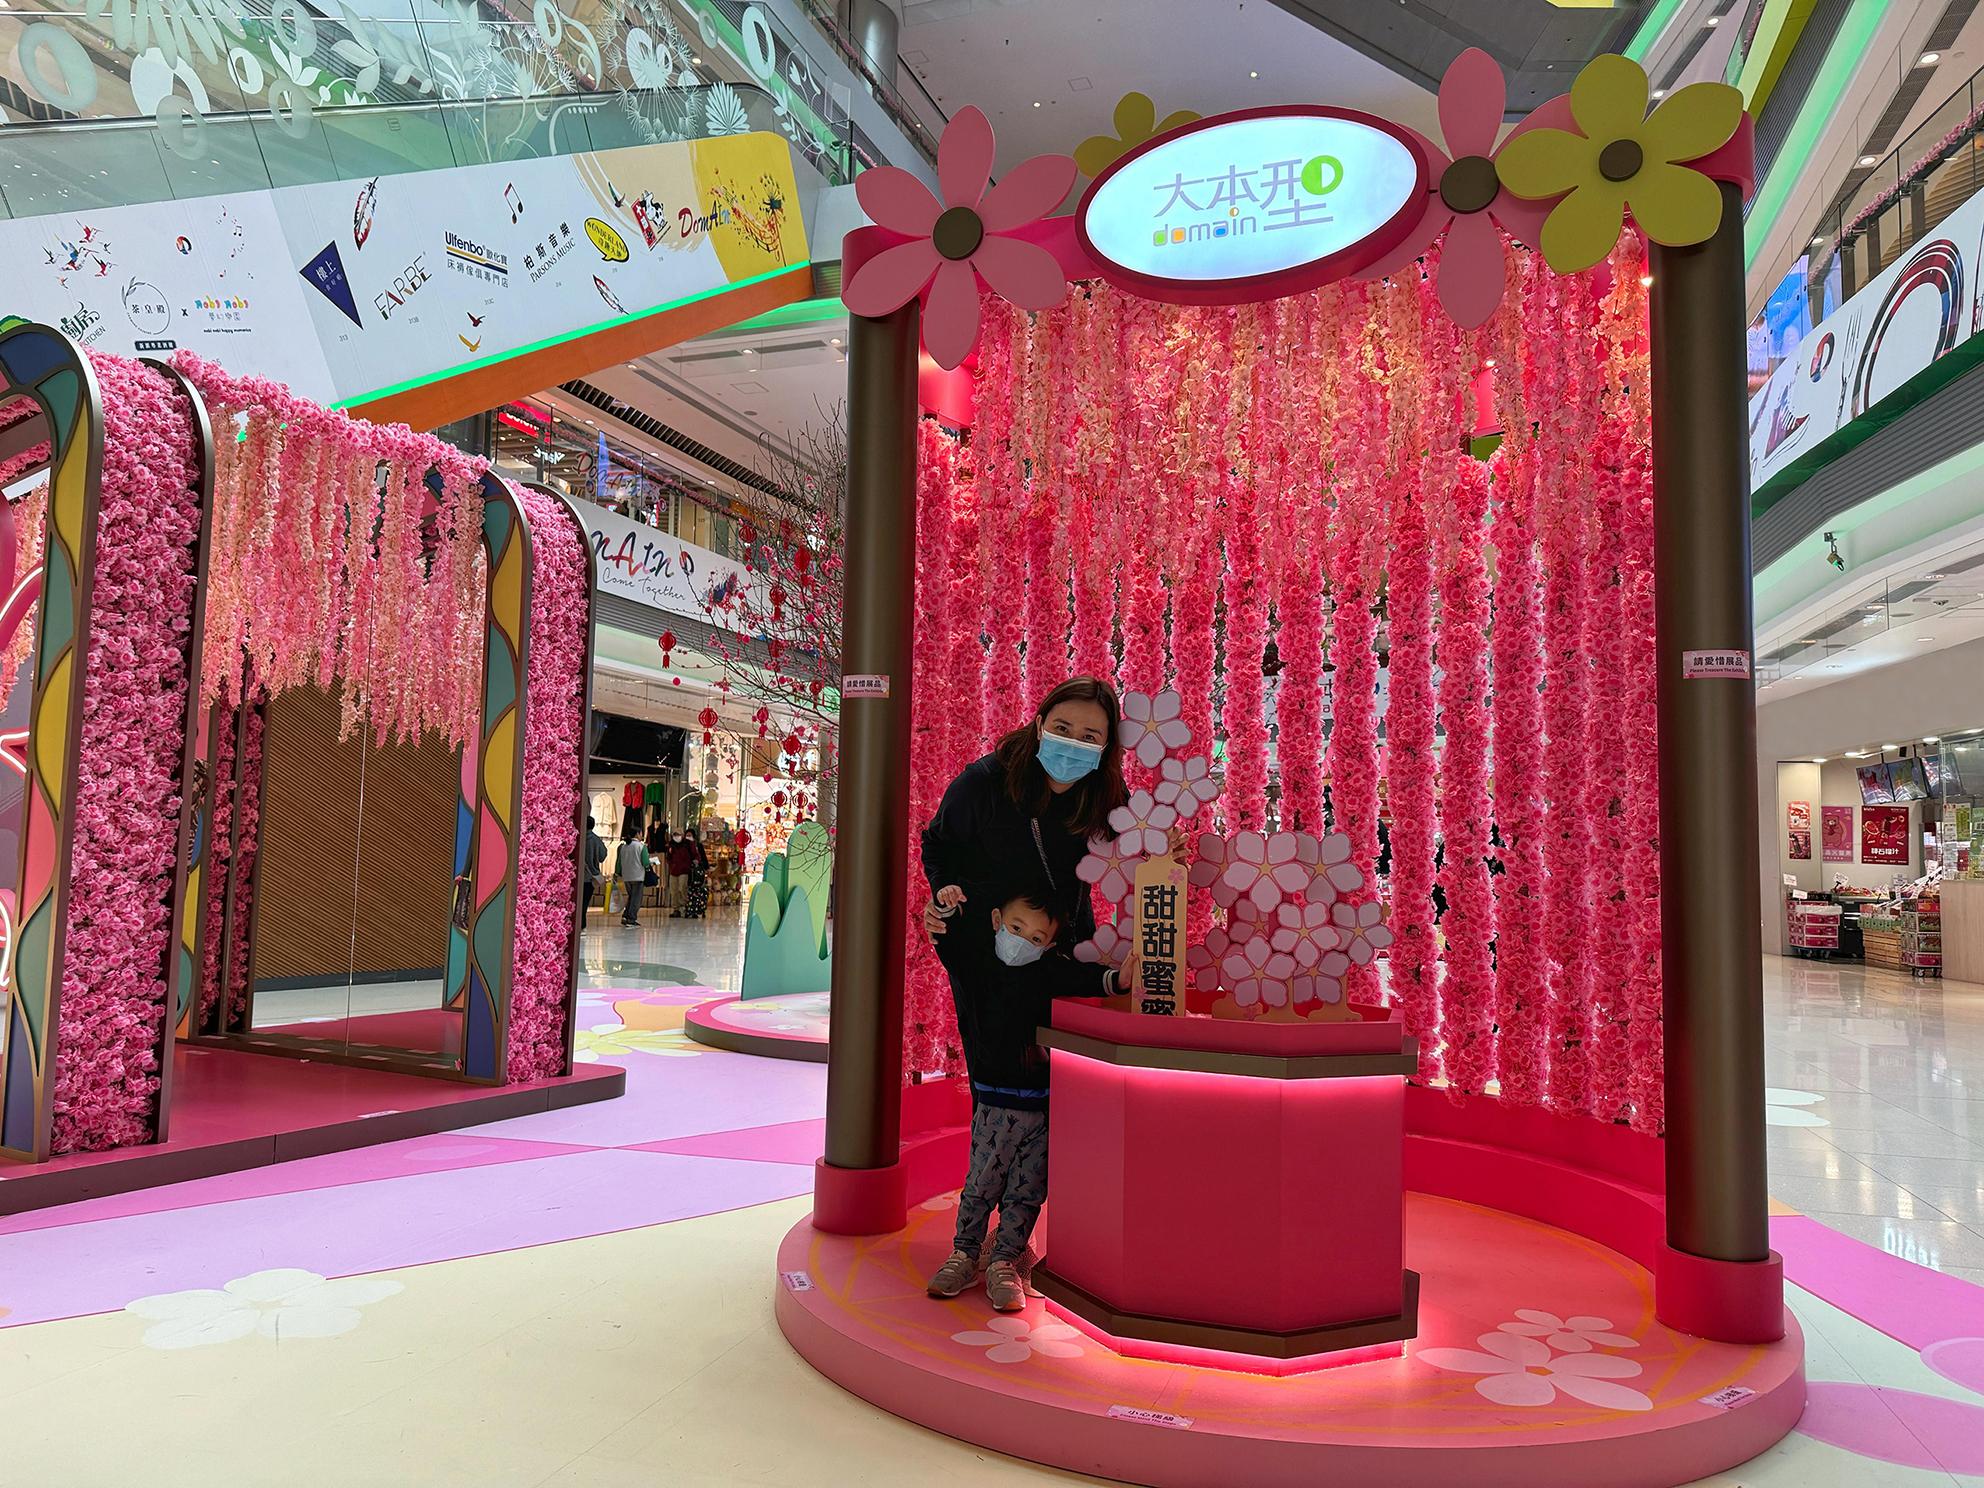 为庆祝农历新年将至，香港房屋委员会在辖下商场举办新春庆祝活动，与市民共度新岁及推动经济。图示油塘区域商场「大本型」地下中庭长达五米的「花镜长廊」及「幸运花签」摆设。